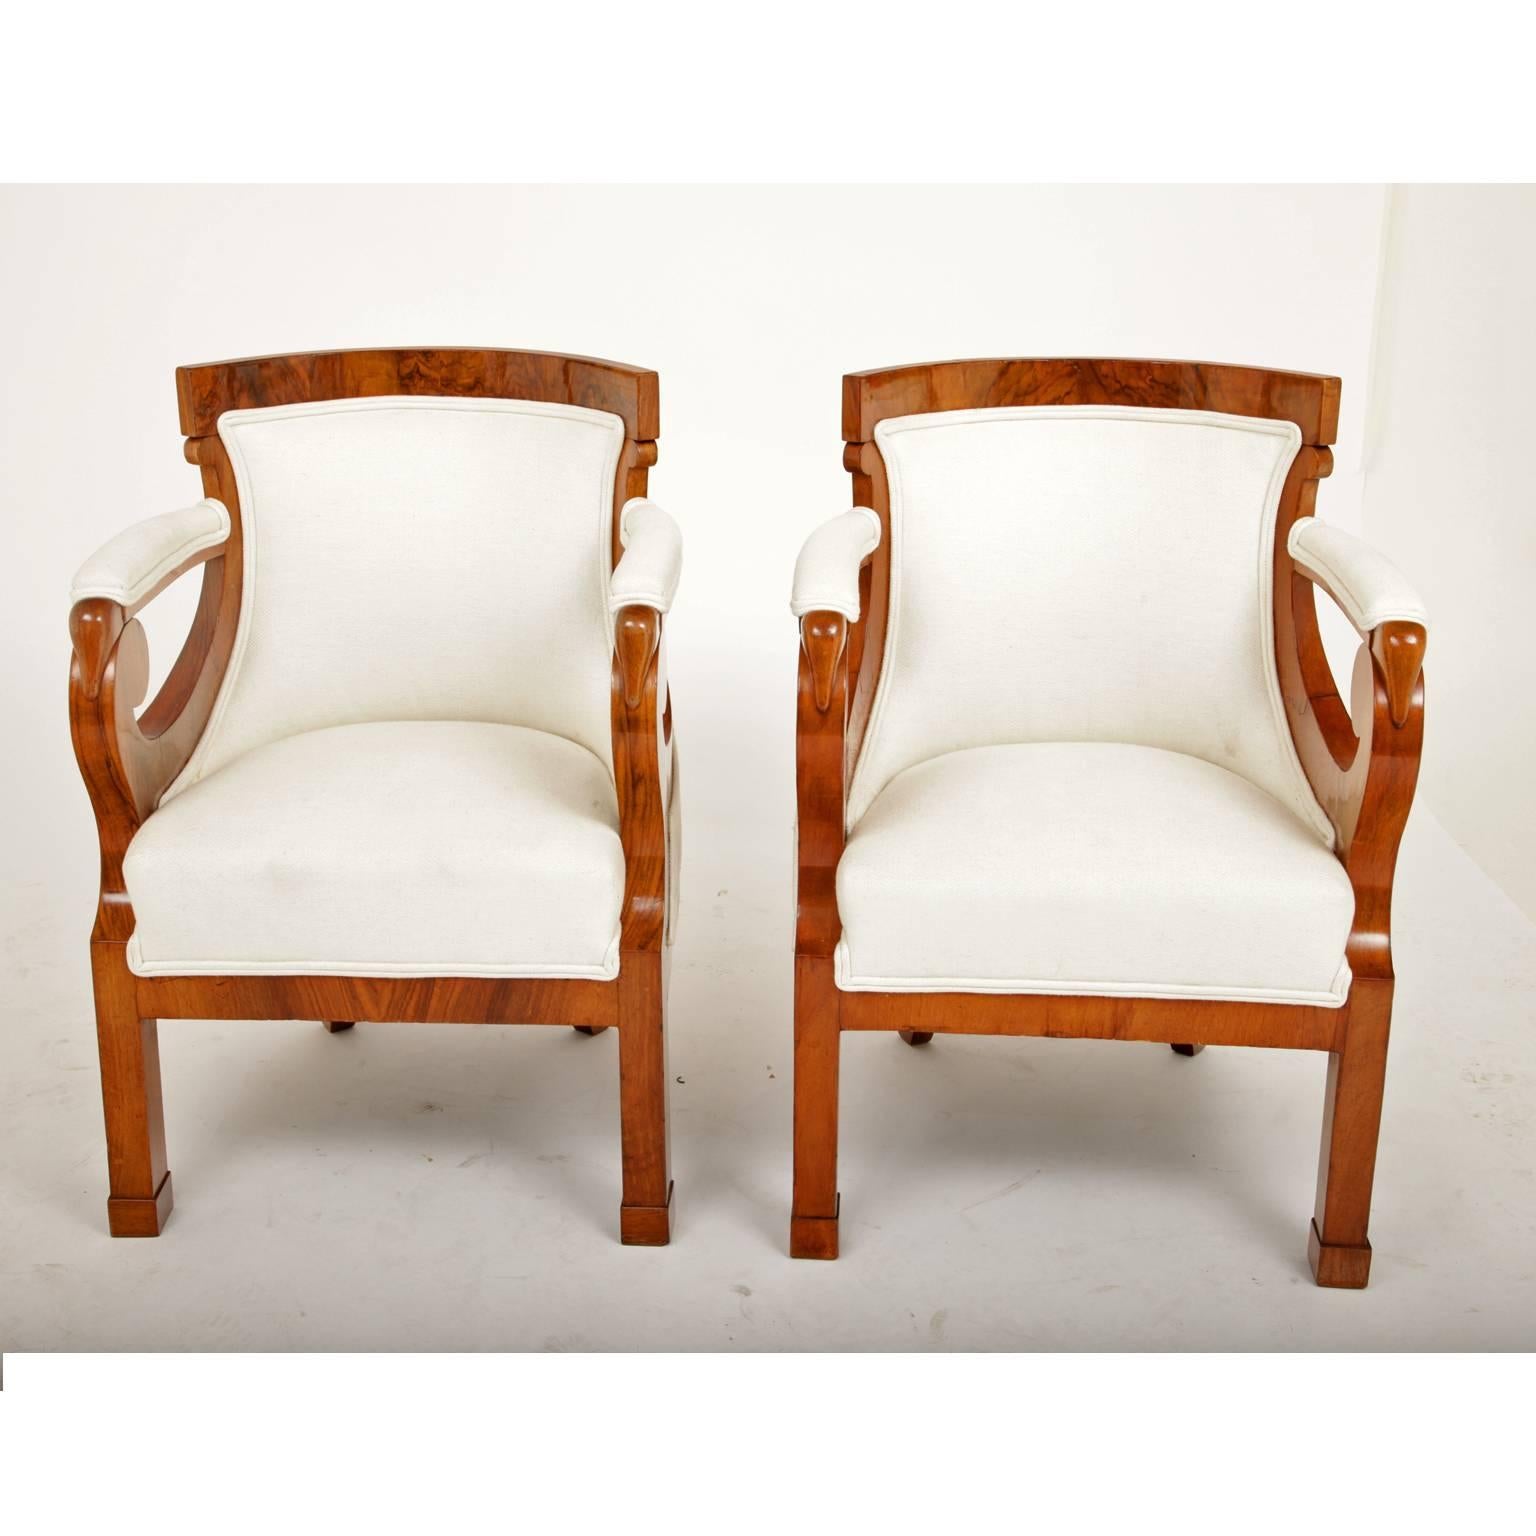 European Biedermeier Bergere Chairs, circa 1830